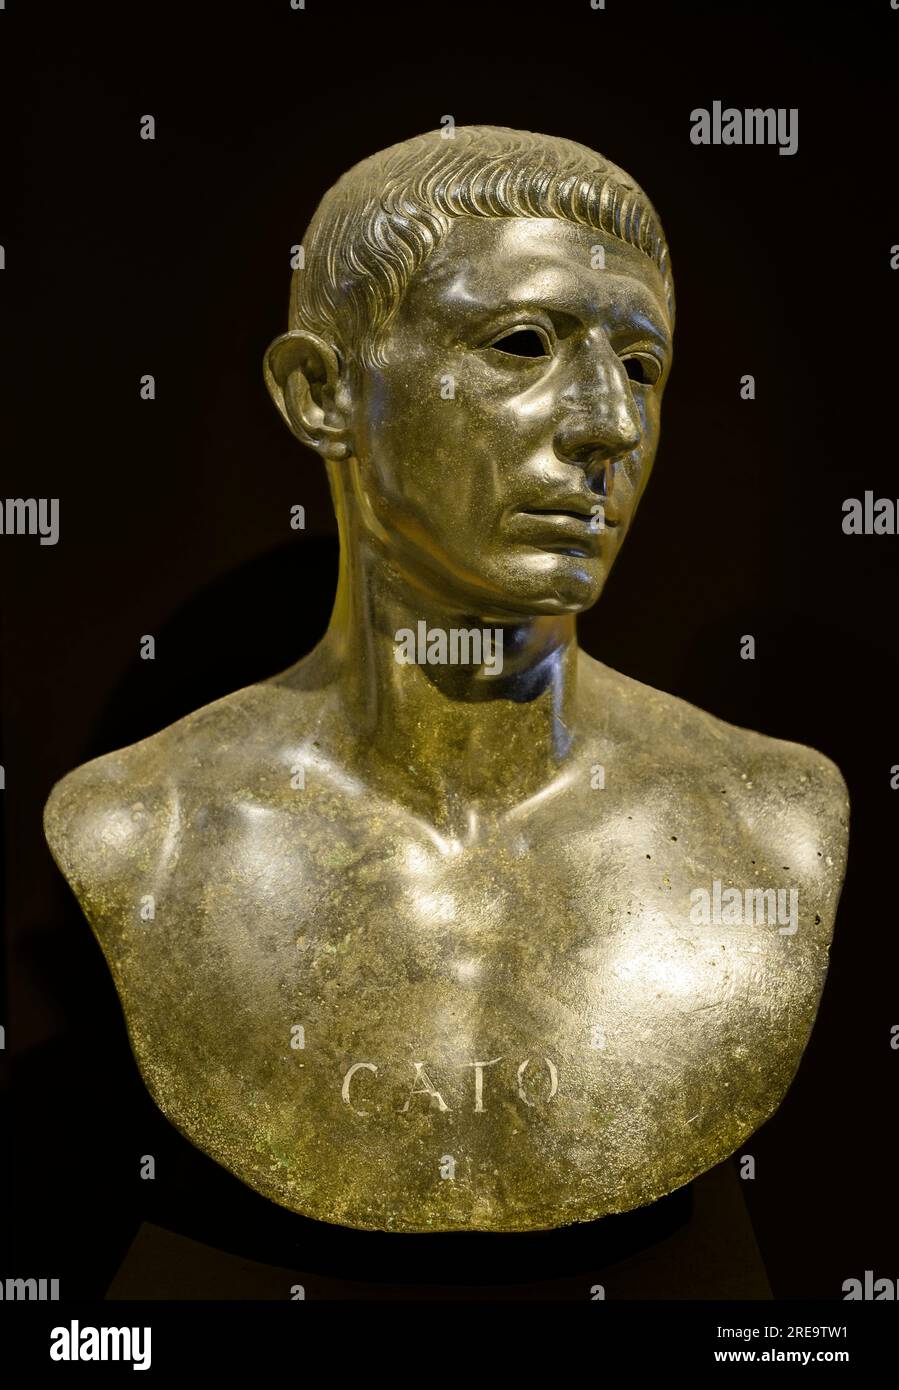 Bronze Porträtbüste von Cato wahrscheinlich Cato Uticensis - Cato, der jüngere, späte reubische römische Senator, von Volubilis in Marocco. 1. Jahrhundert n. Chr. Mu Stockfoto